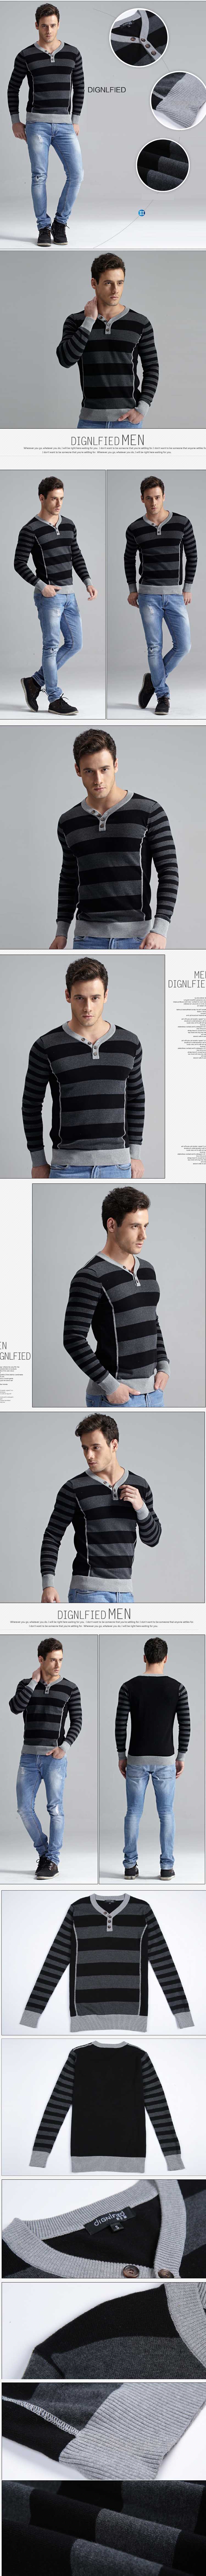 jual sweater rajut pria motif garis terbaru , terbuat dari bahan berkualitas , sweater rajut ini sangat cocok dipakai dengan kemeja sebagai dalaman, temukan koleksi sweater rajut lain nya disini